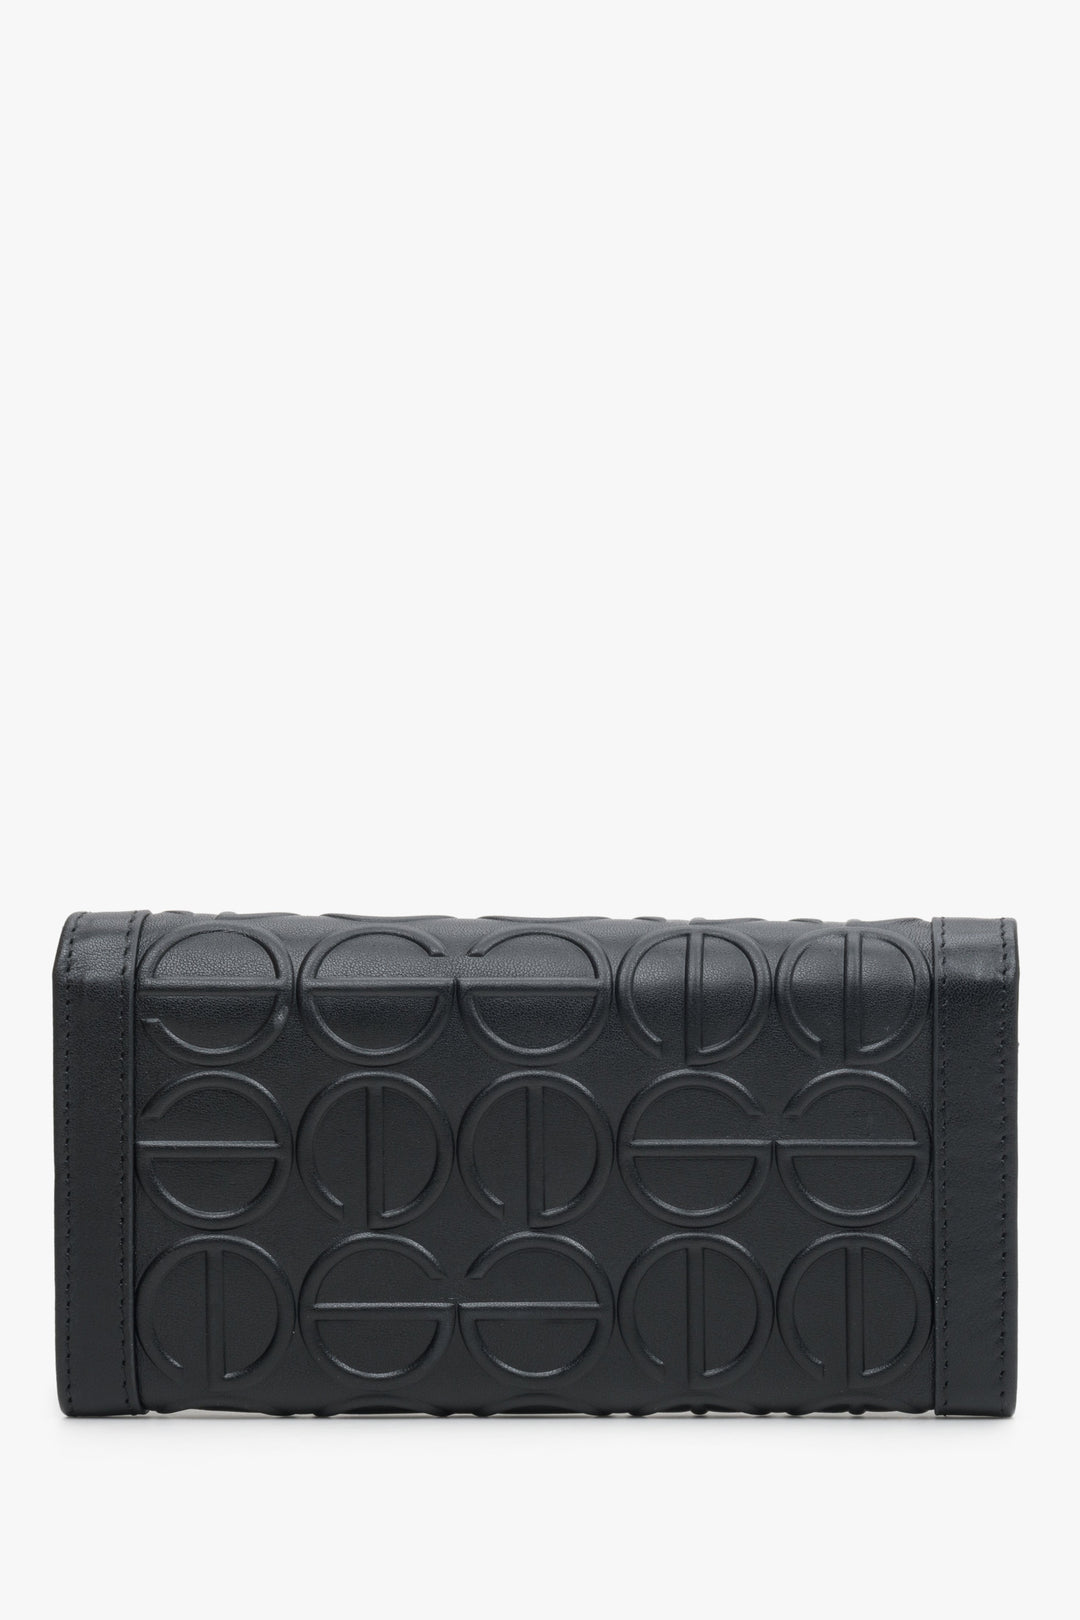 Large women's wallet made of genuine black leather, Estro ER00113668.